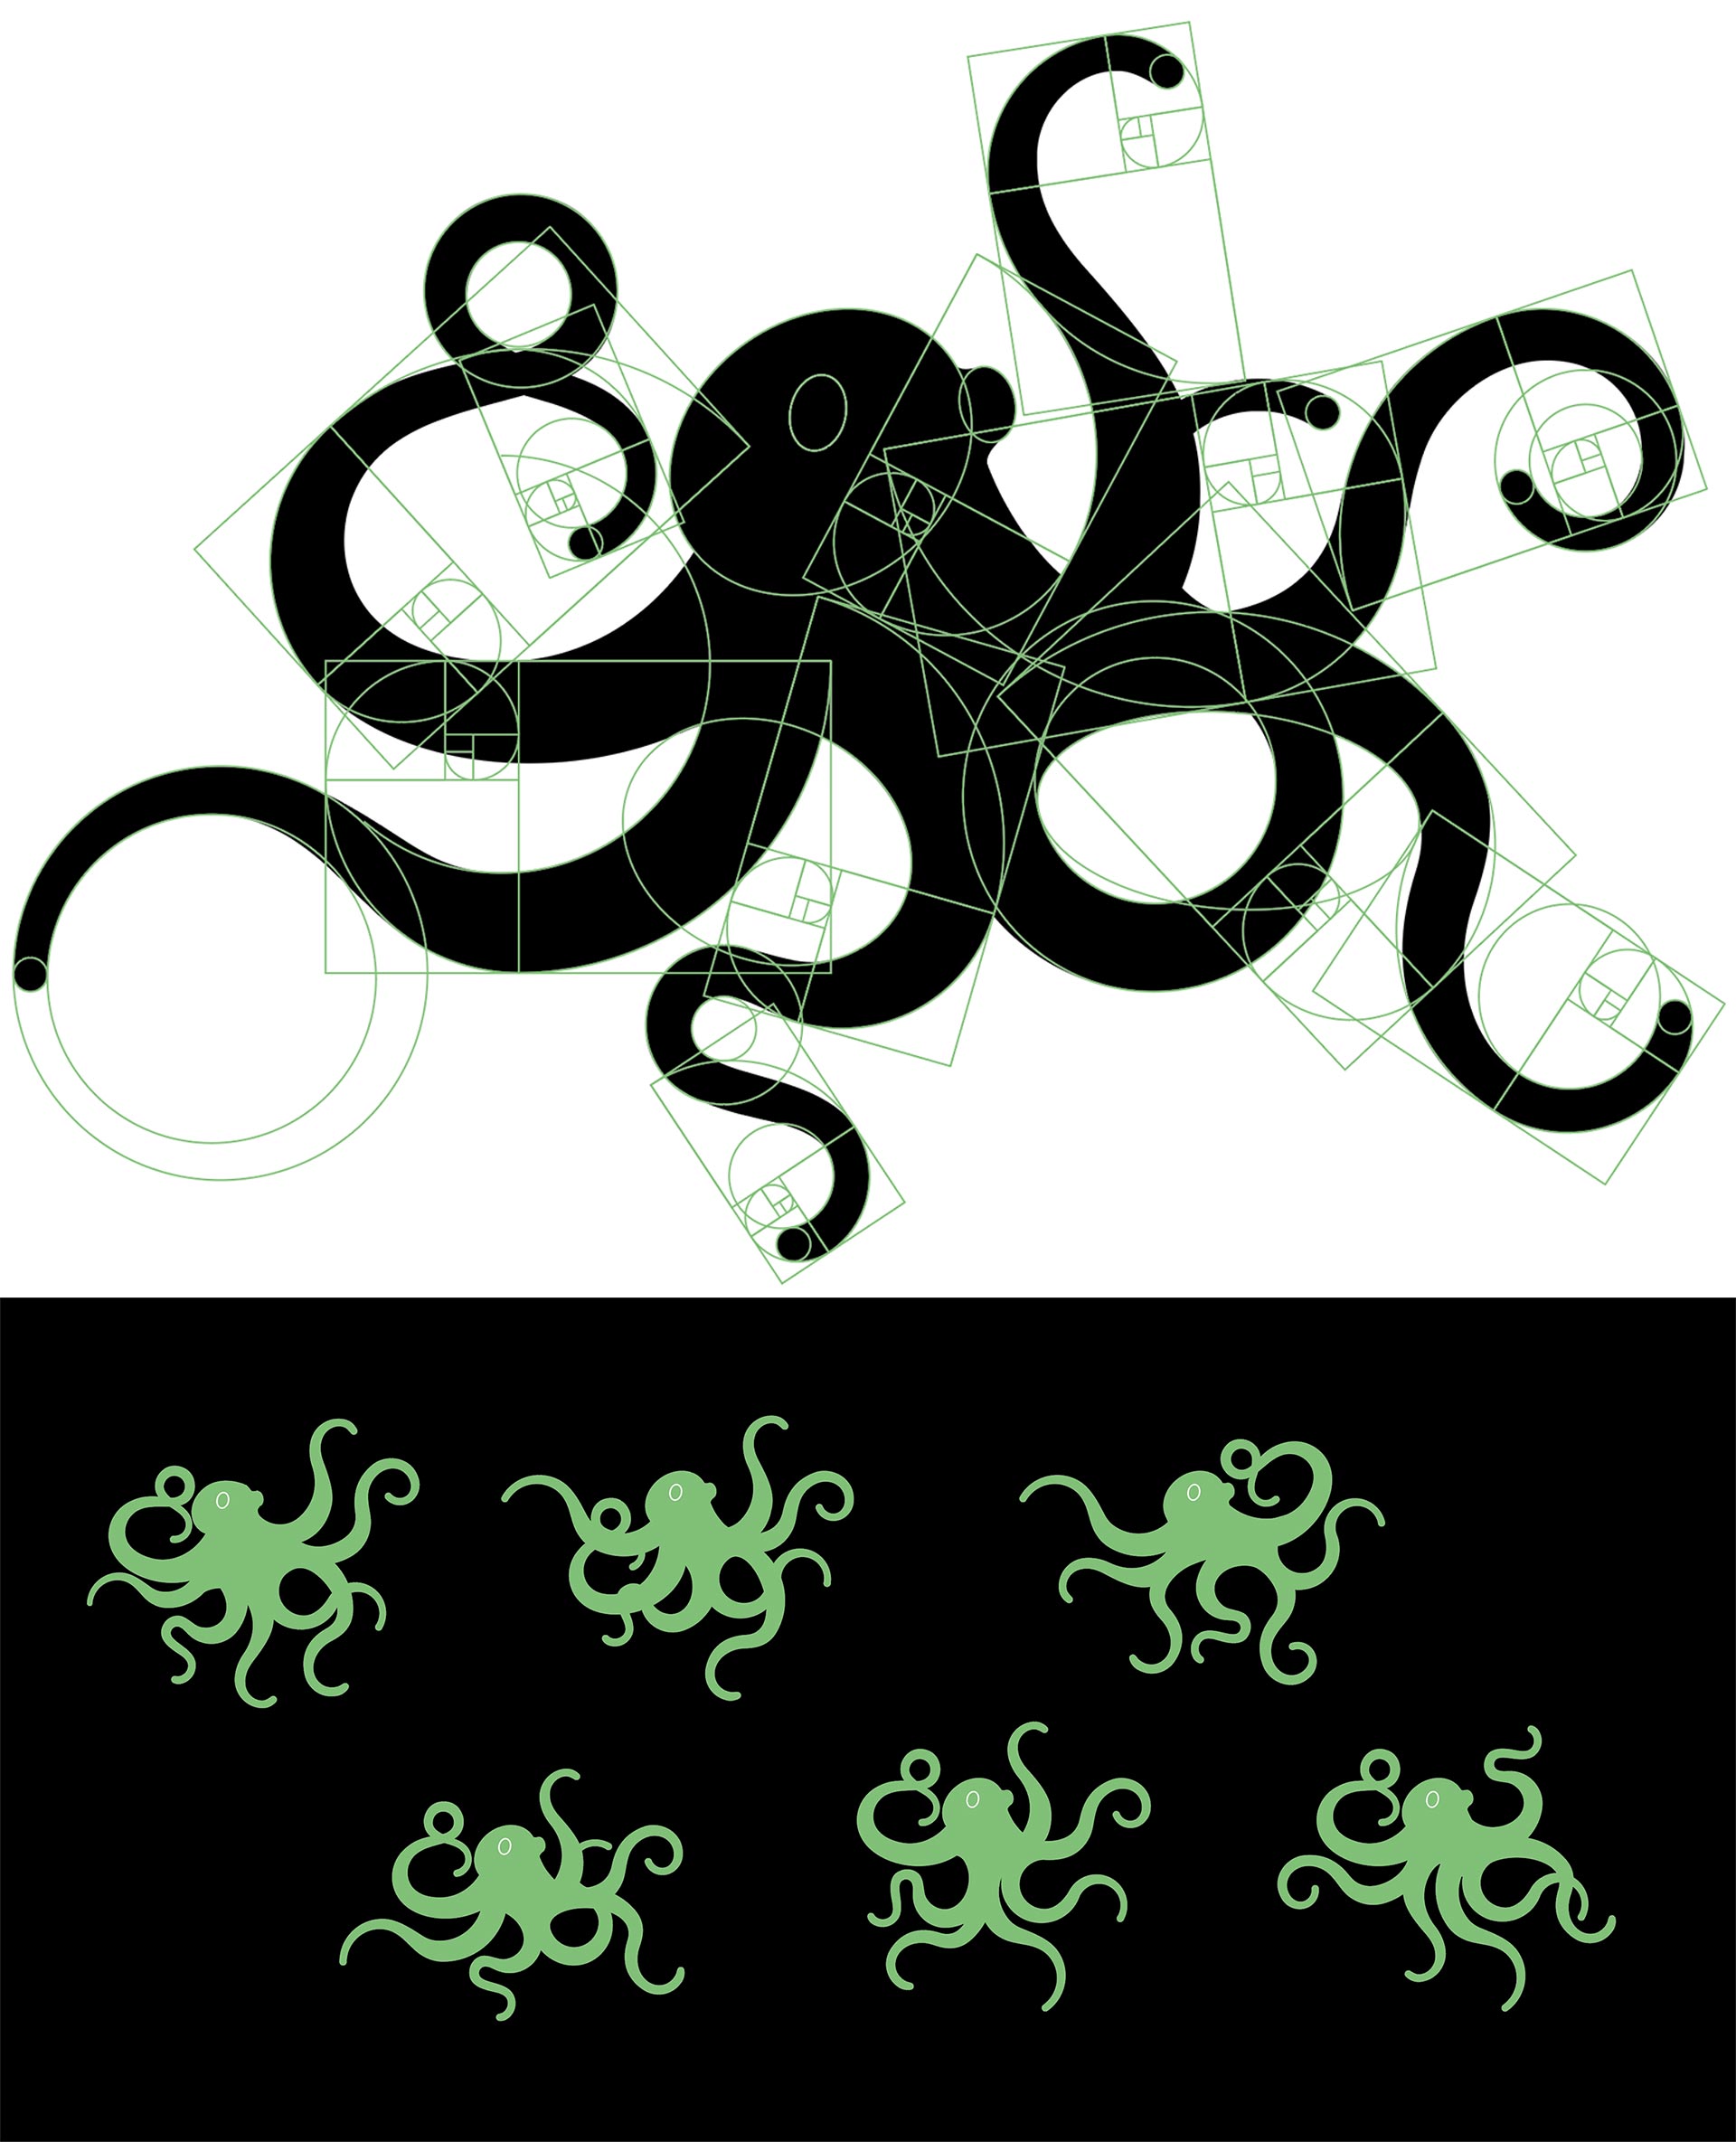 Schwarzer Oktopus mit grünen Goldene Spiralen und sechs grüne Oktopusse